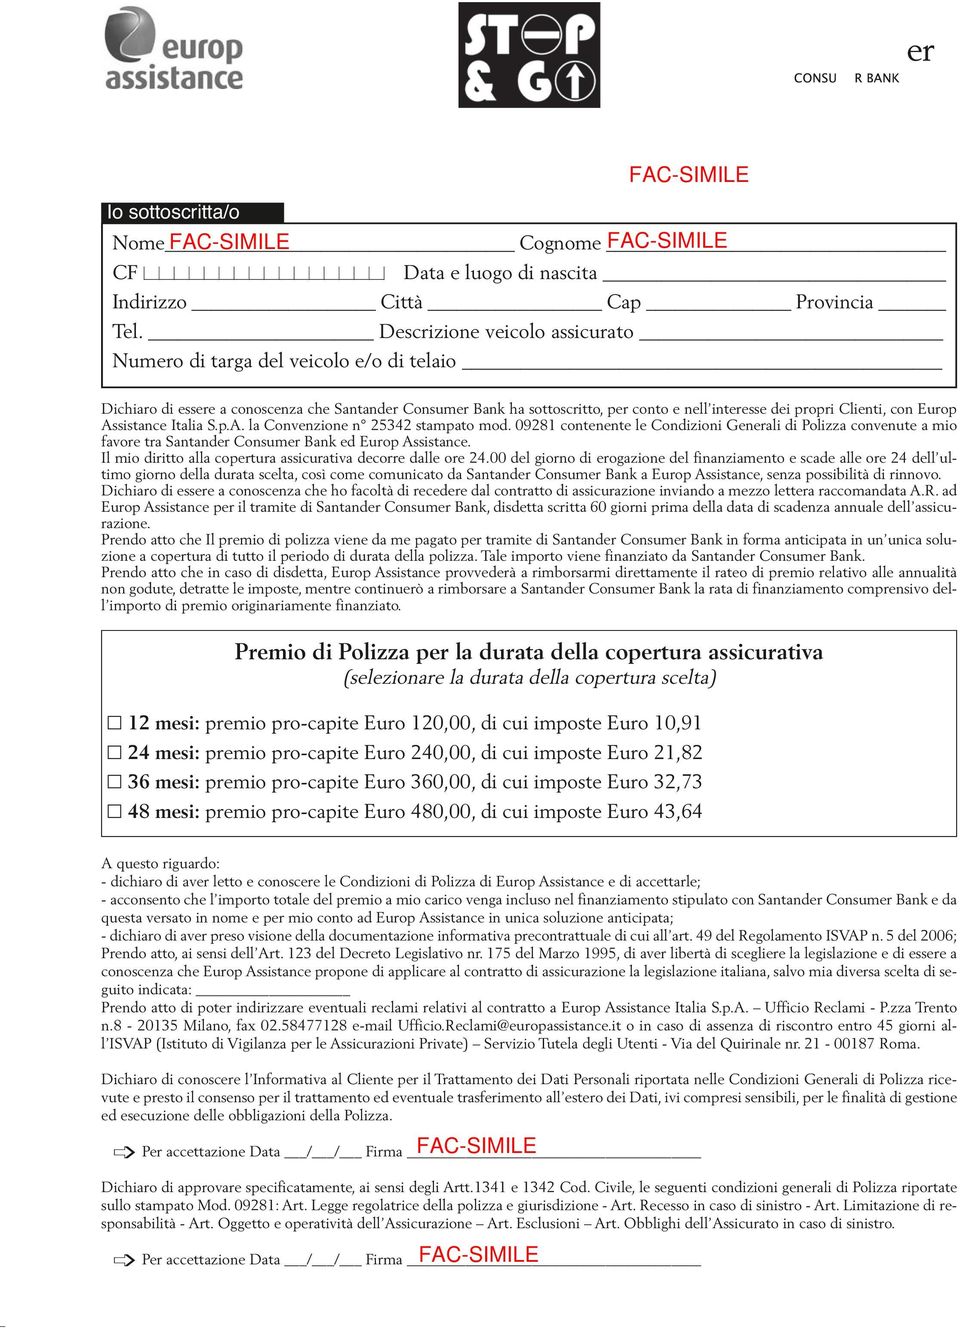 con Europ Assistance Italia S.p.A. la Convenzione n 25342 stampato mod. 09281 contenente le Condizioni Generali di Polizza convenute a mio favore tra Santander Consumer Bank ed Europ Assistance.